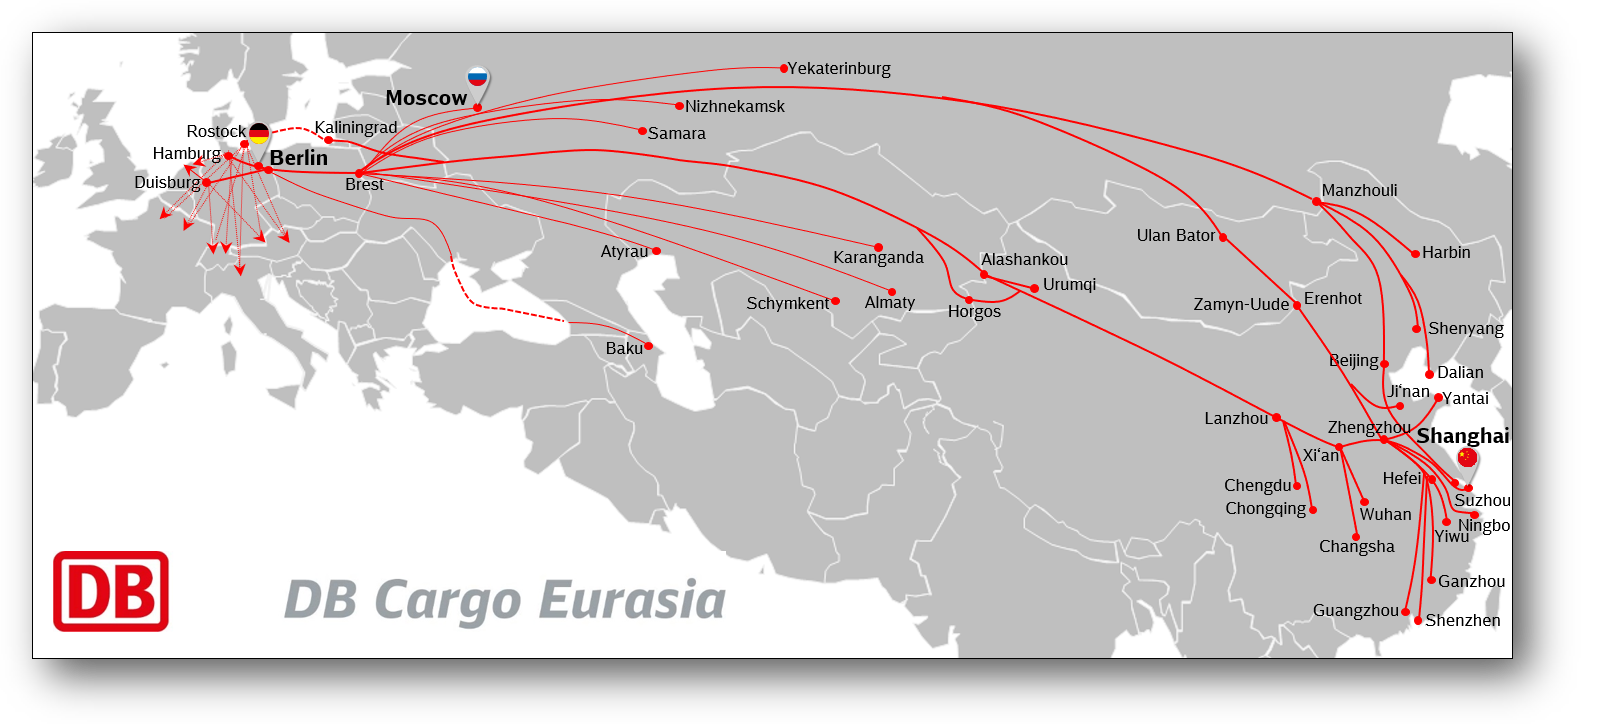 DB Cargo Eurasia Routen zwischen Russland, GUS-Staaten und Europa